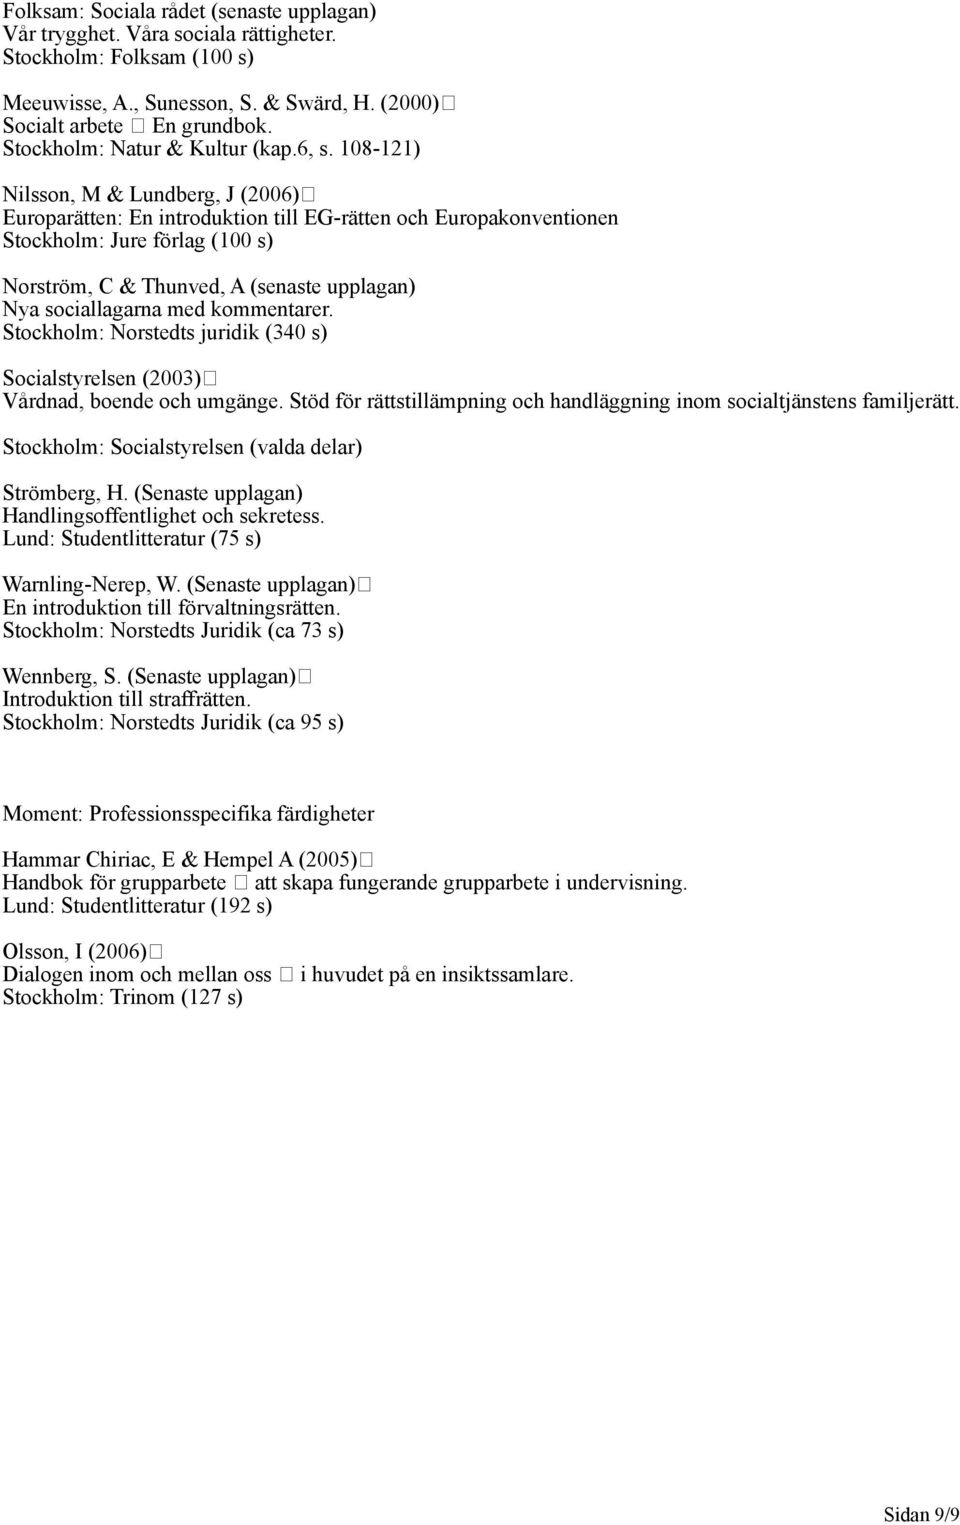 108-121) Nilsson, M & Lundberg, J (2006) Europarätten: En introduktion till EG-rätten och Europakonventionen Stockholm: Jure förlag (100 s) Norström, C & Thunved, A (senaste upplagan) Nya